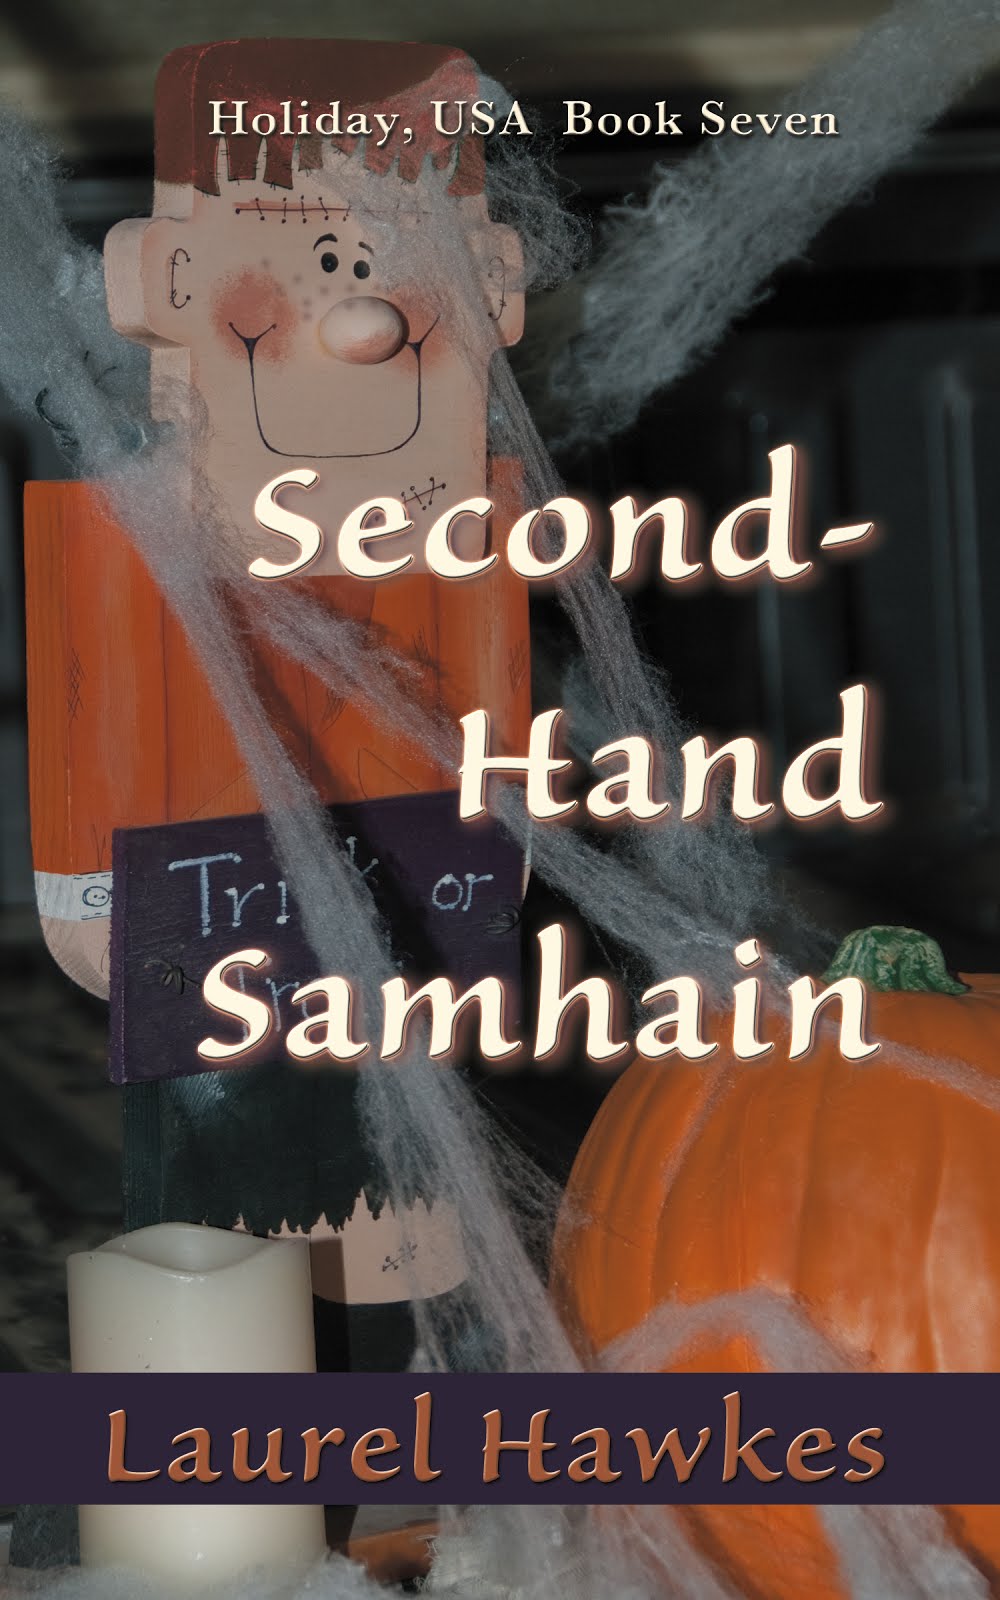 Secondhand Samhain